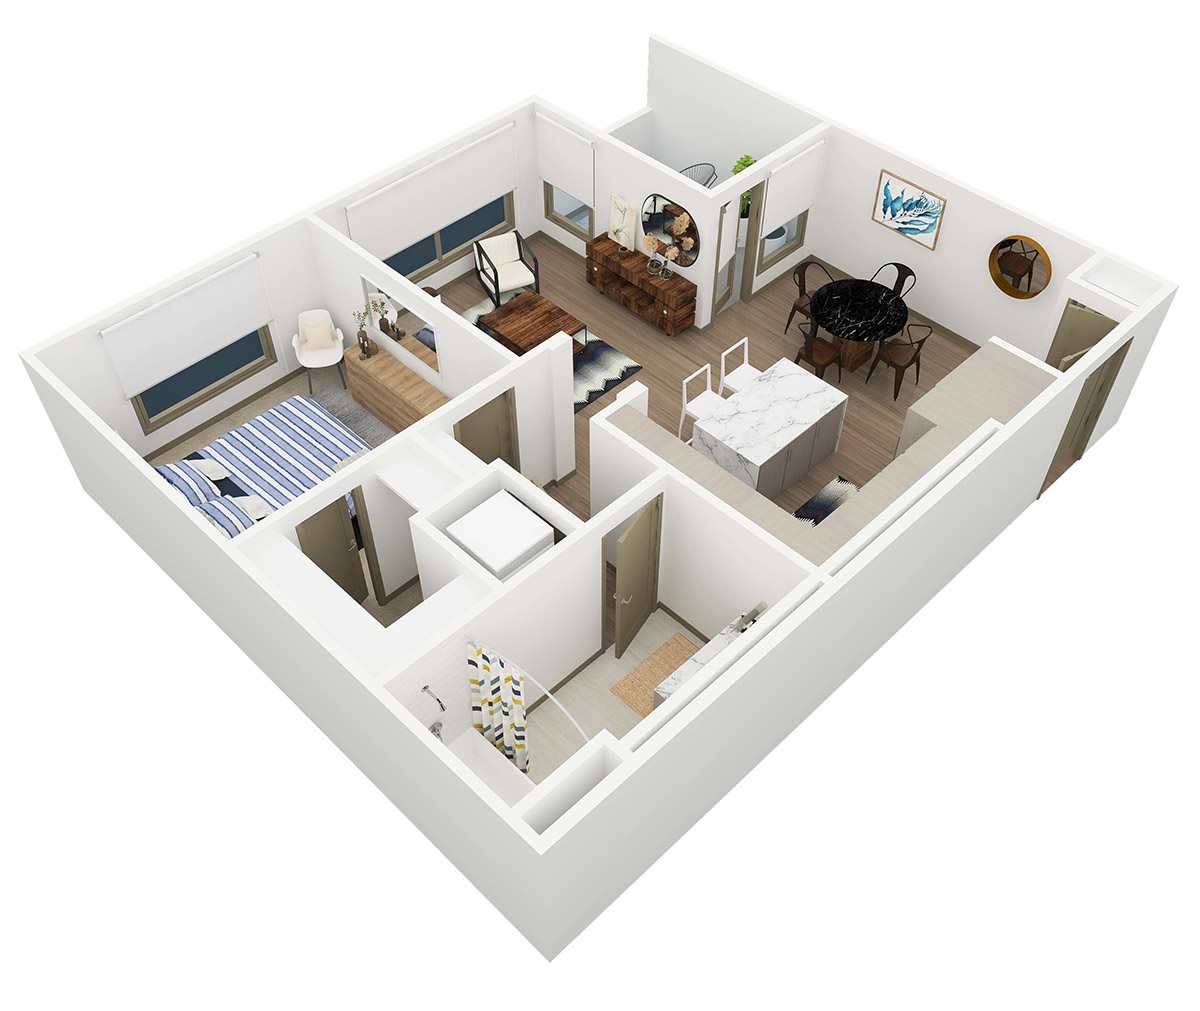 Persea 1 Bedroom Floor Plan - A1 - 2